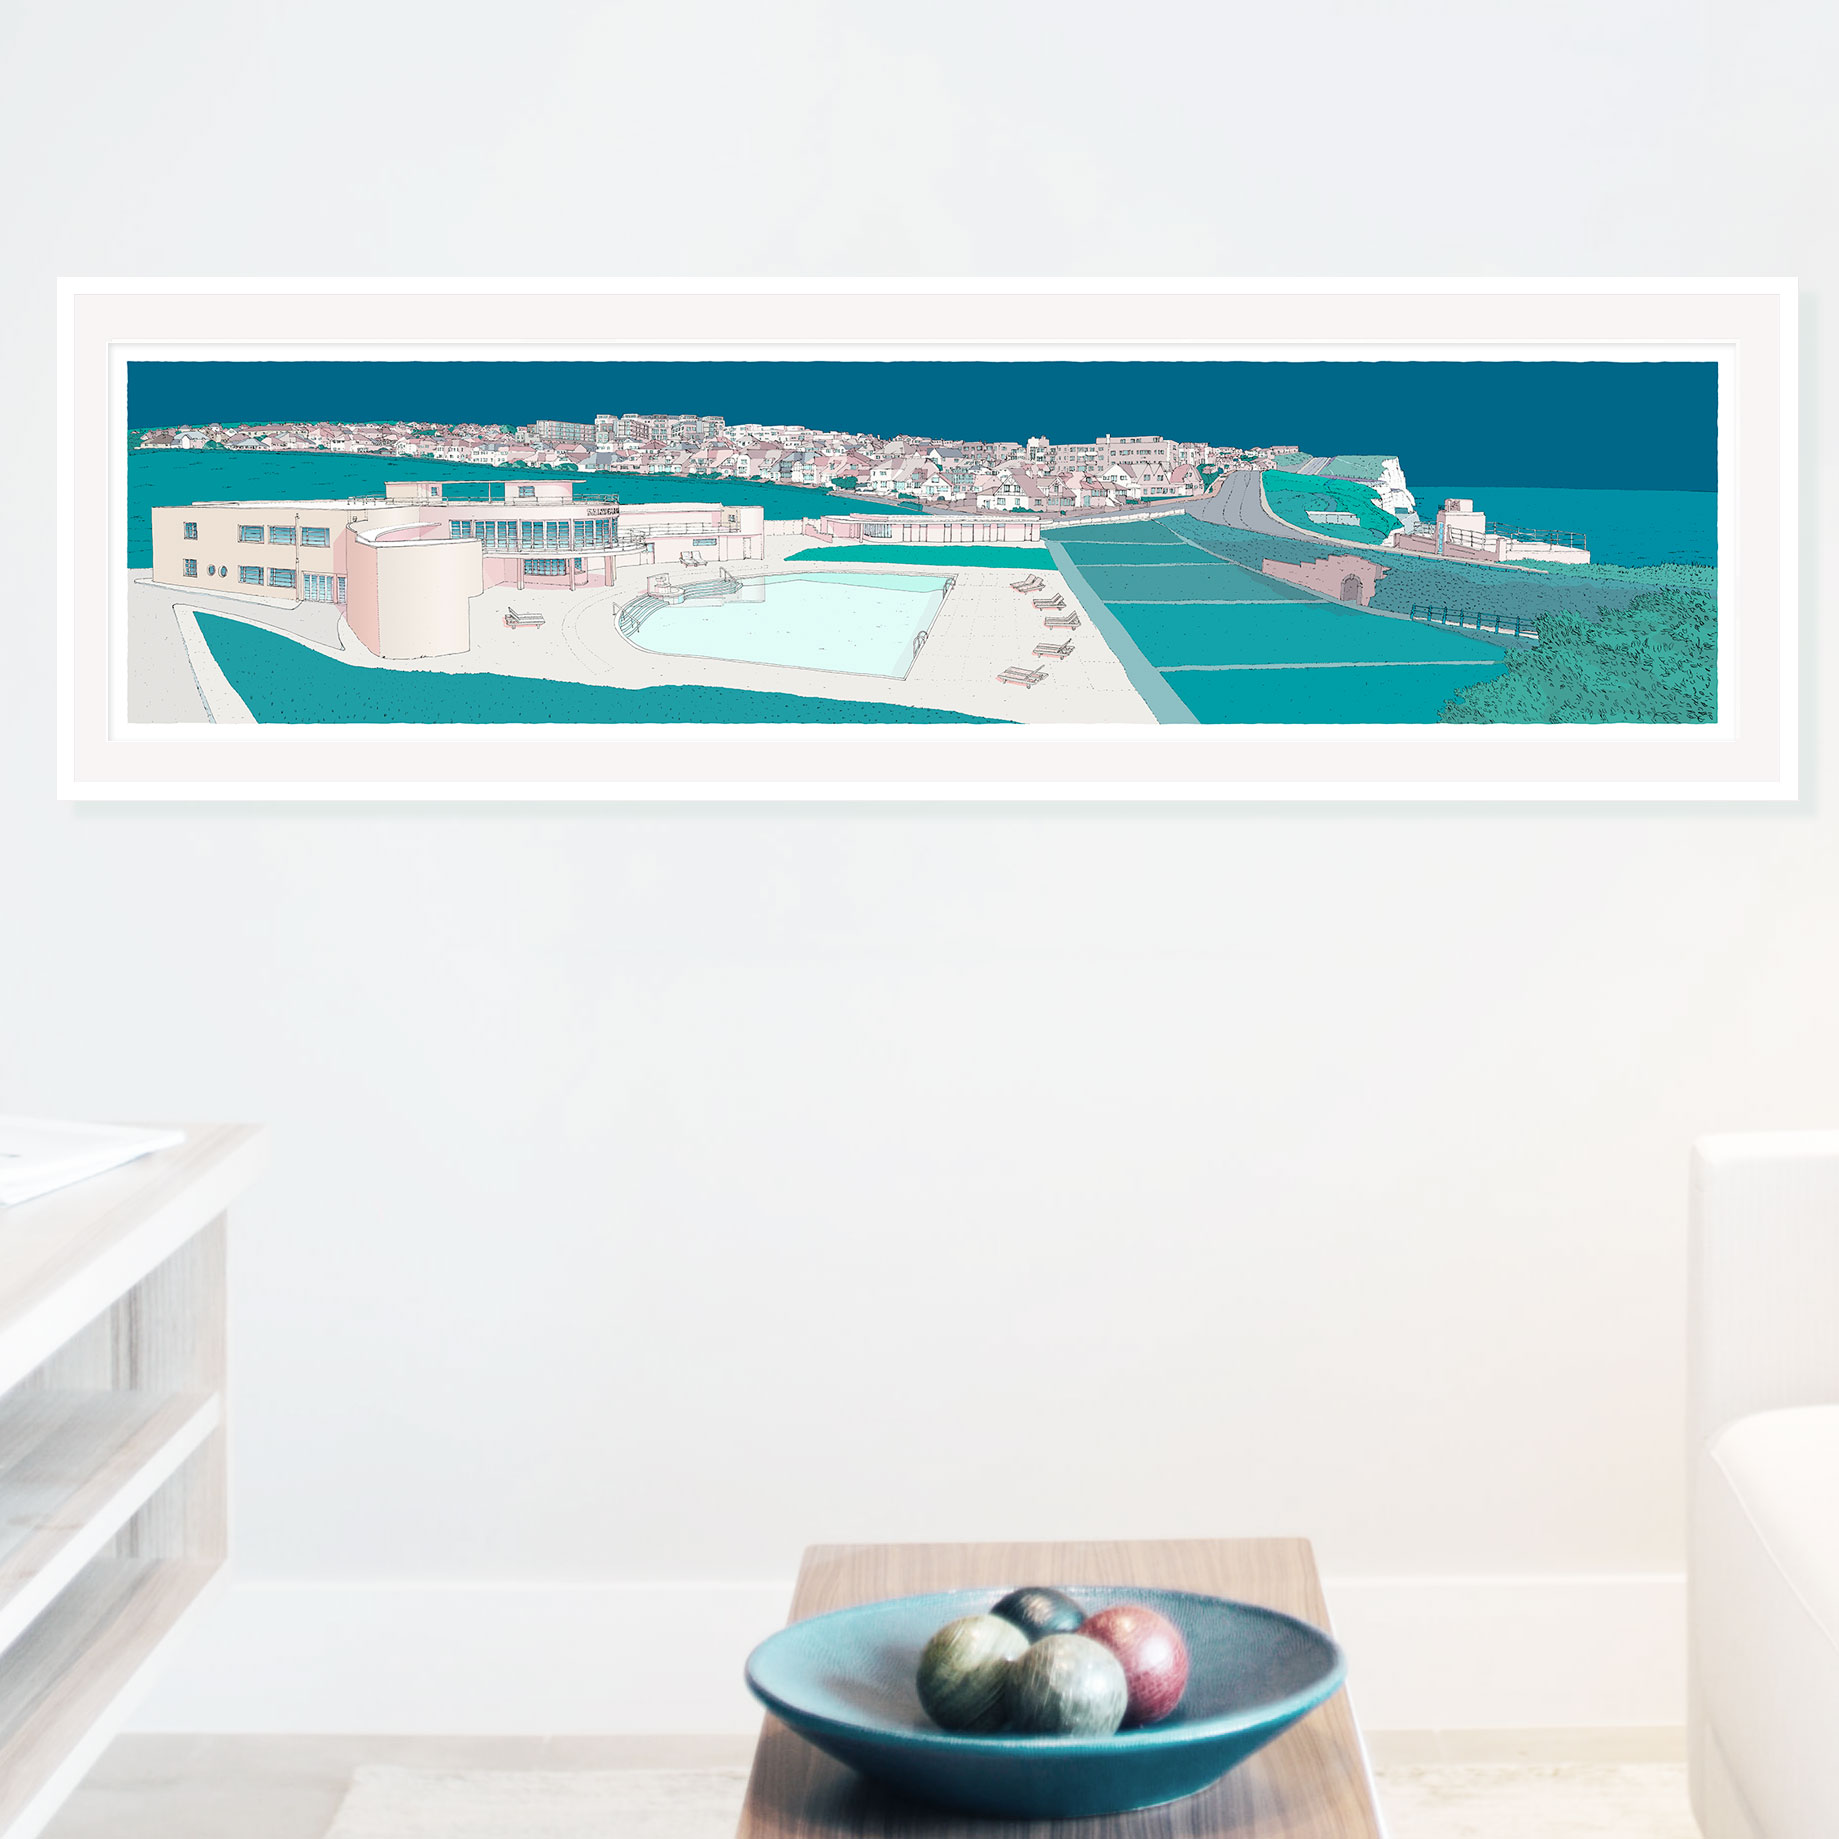 art print titled Saltdean Lido by the Sea Ocean Blue by artist alej ez framed